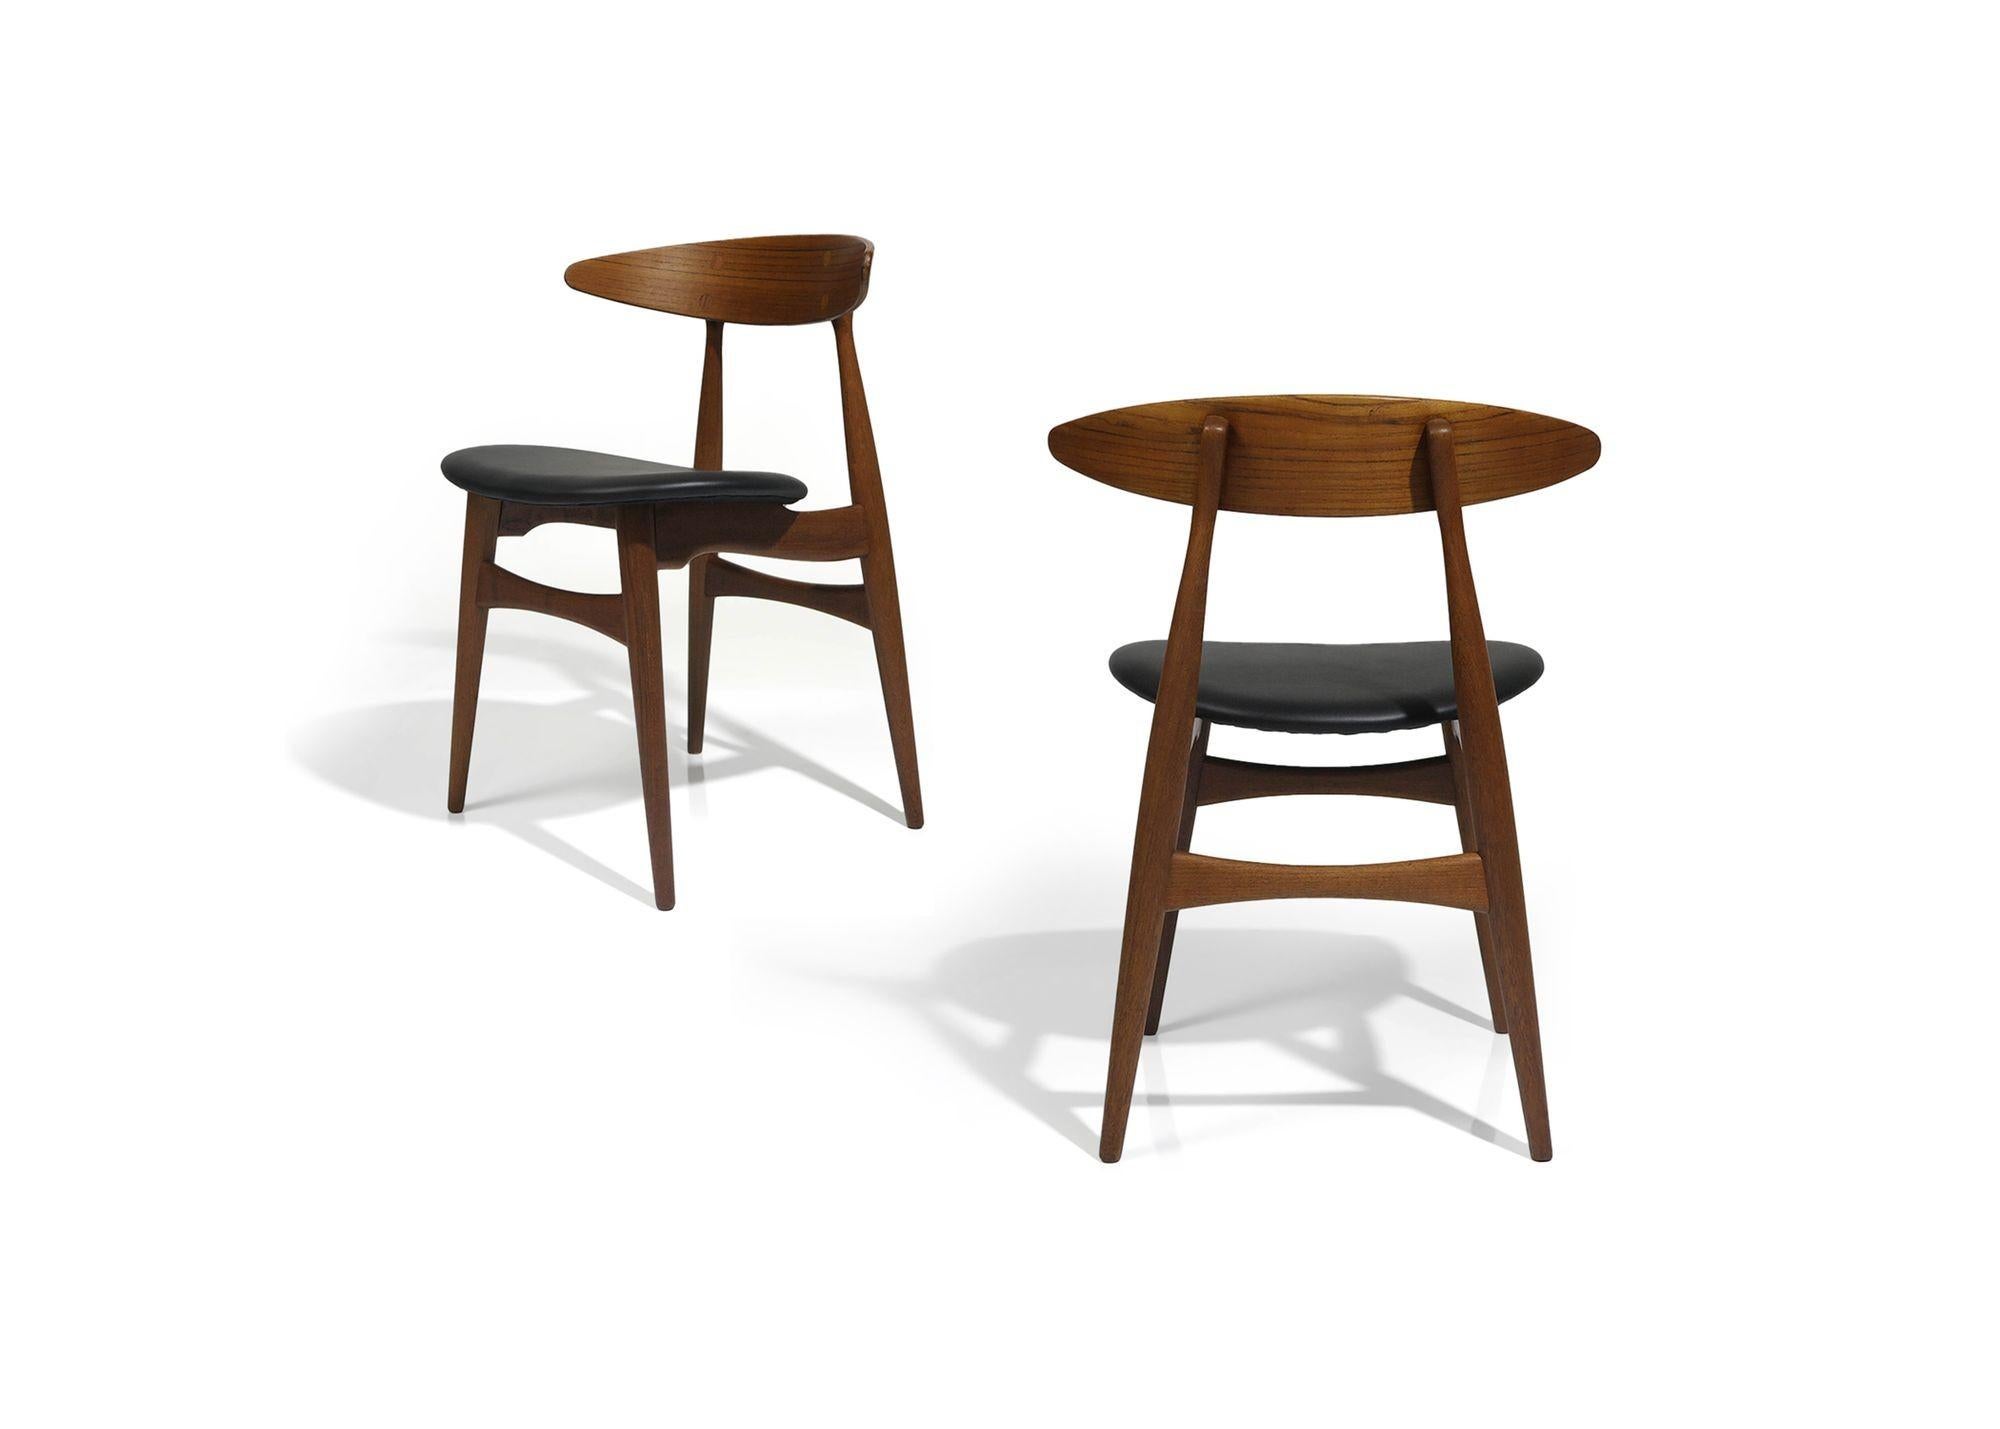 Chaises de salle à manger CH33 sculptées par Hans Wegner, conçues en 1957, pour Carl Hansen & Son, fabriquées entre 1957 et 1967. Ces chaises sont dotées d'un dossier incurvé spectaculaire et de nouveaux sièges en cuir. Elles sont considérées comme